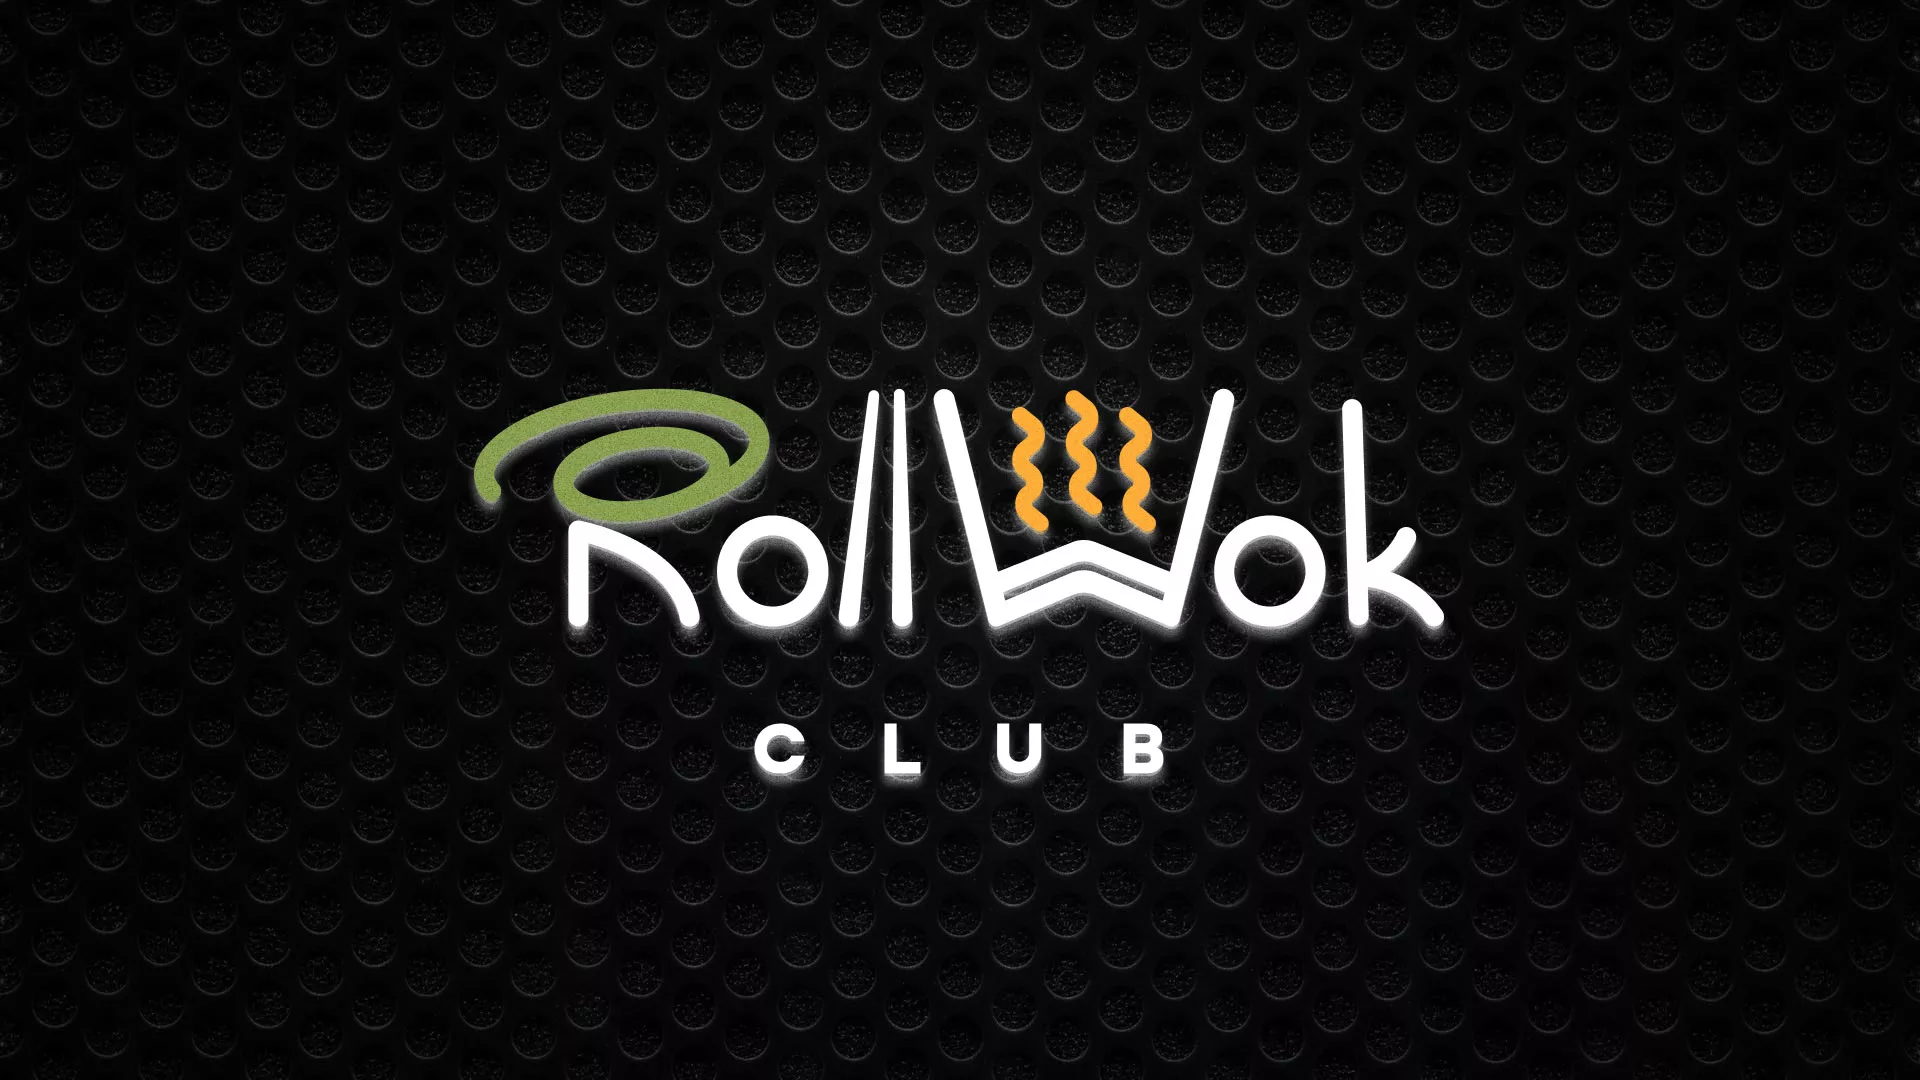 Брендирование торговых точек суши-бара «Roll Wok Club» в Михайловке